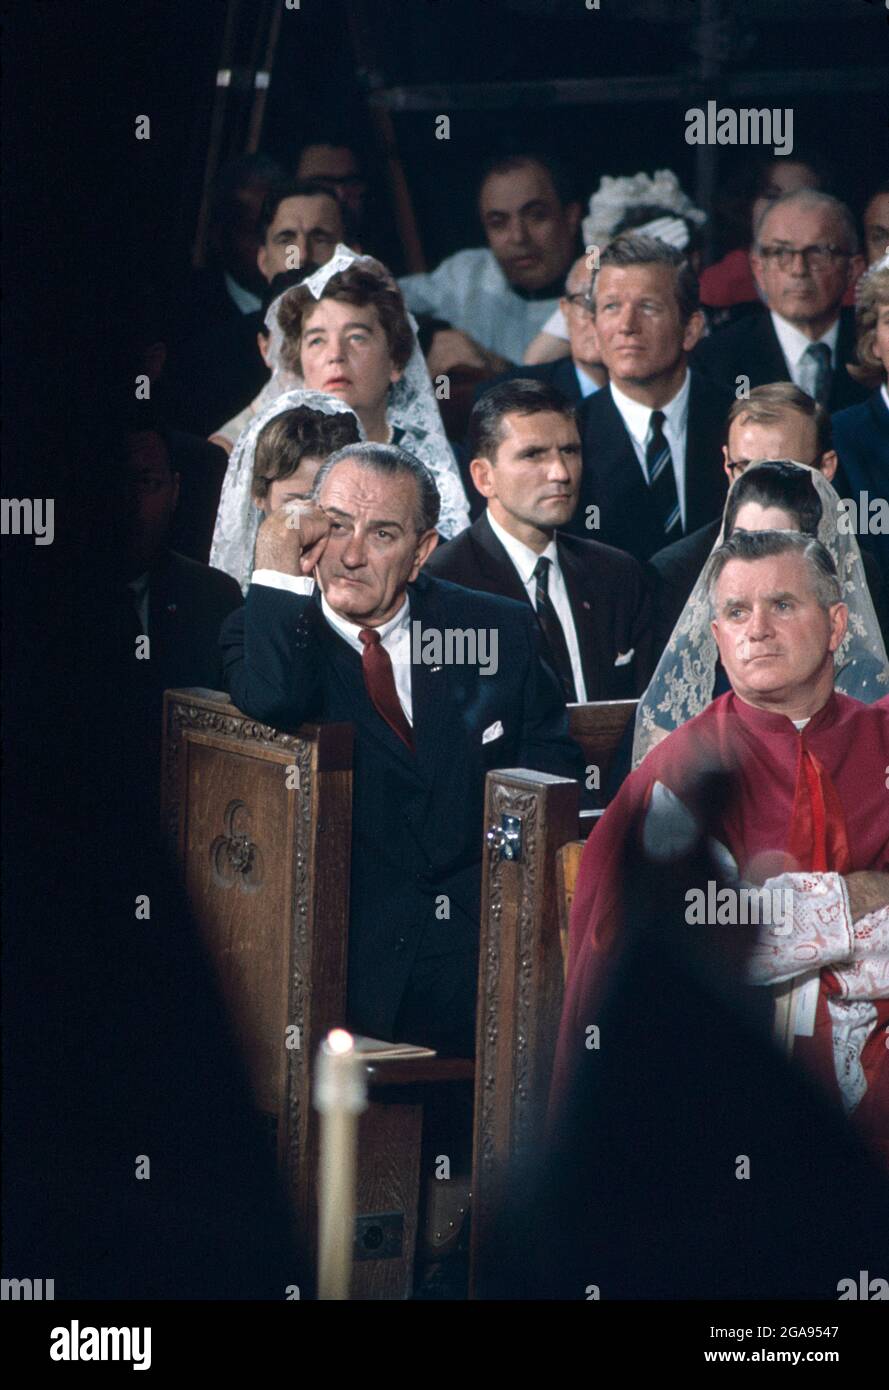 Le président américain Lyndon Johnson assistait à une messe à l'église funéraire Robert F. Kennedy, à la cathédrale Saint-Patrick, à New York, à New York, aux États-Unis, Bernard Gotfryd, 8 juin 1968 Banque D'Images